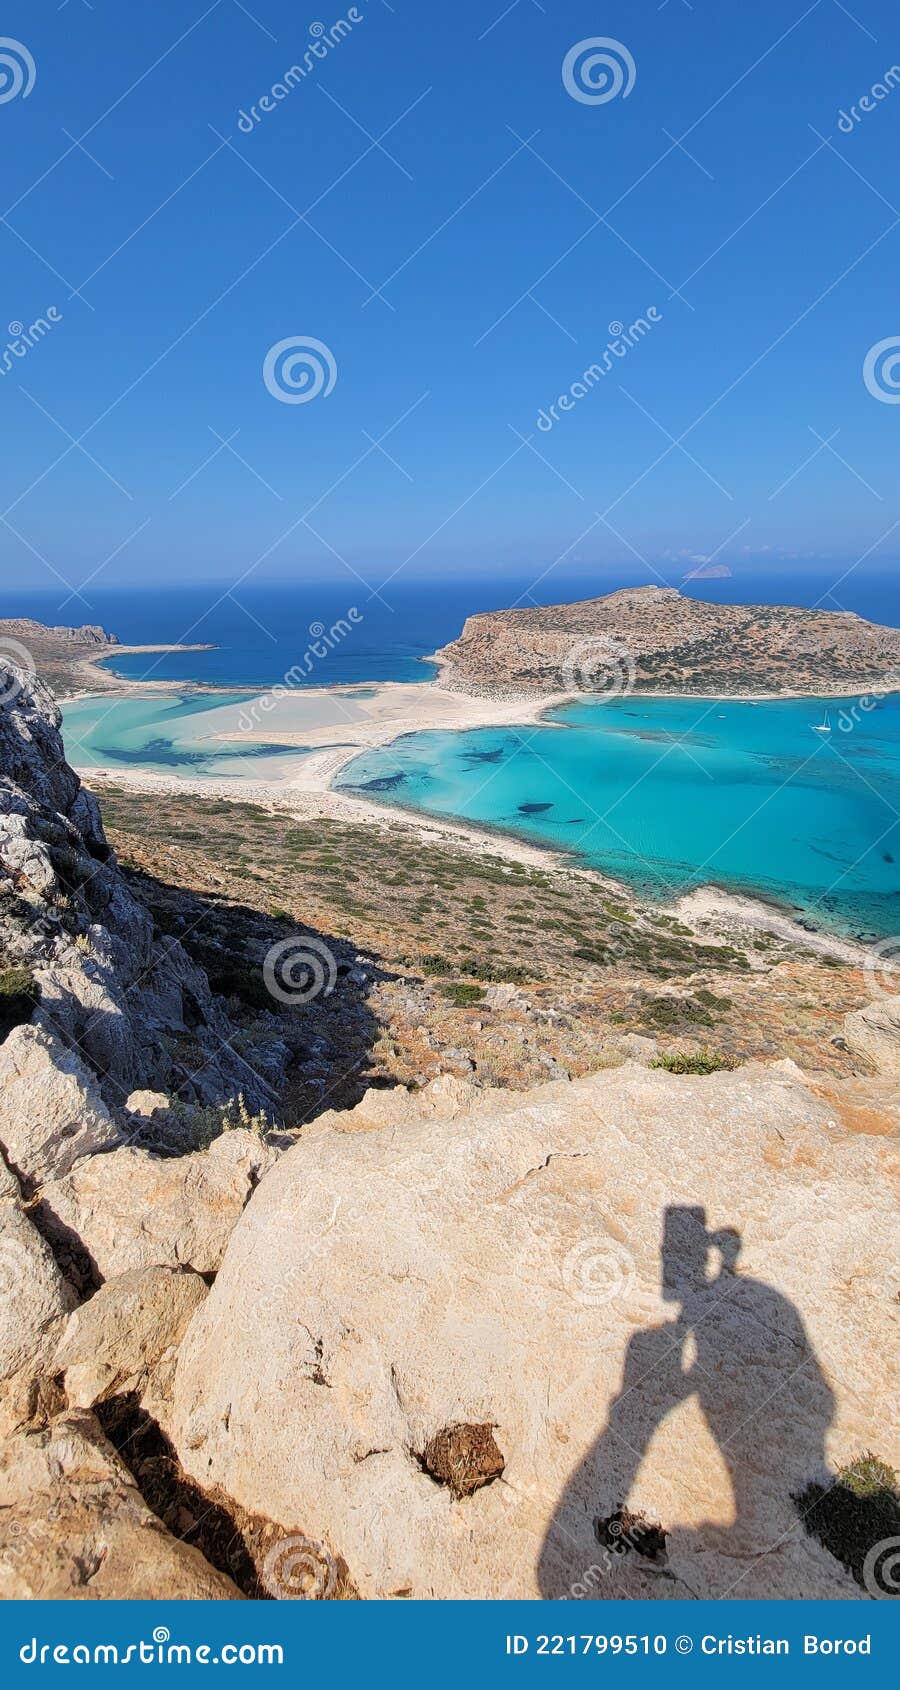 balos beach, creta, greece